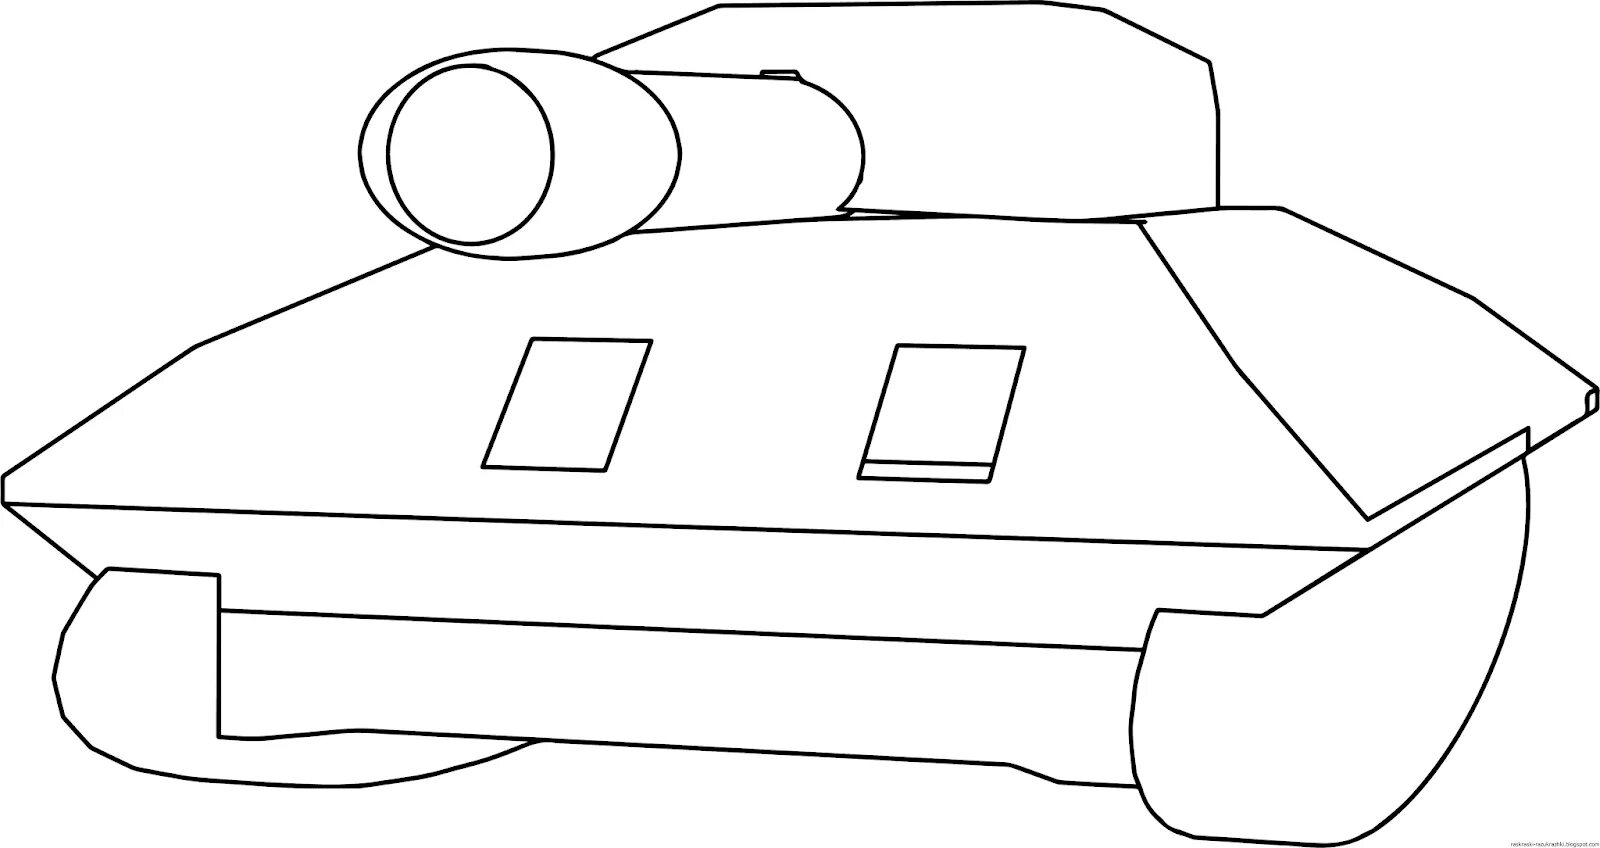 Раскраска танки для детей 3 года. Танк спереди контур. Танк т-34 раскраска для детей. Раскраска танки для детей. Картинка танка для детей раскраски.